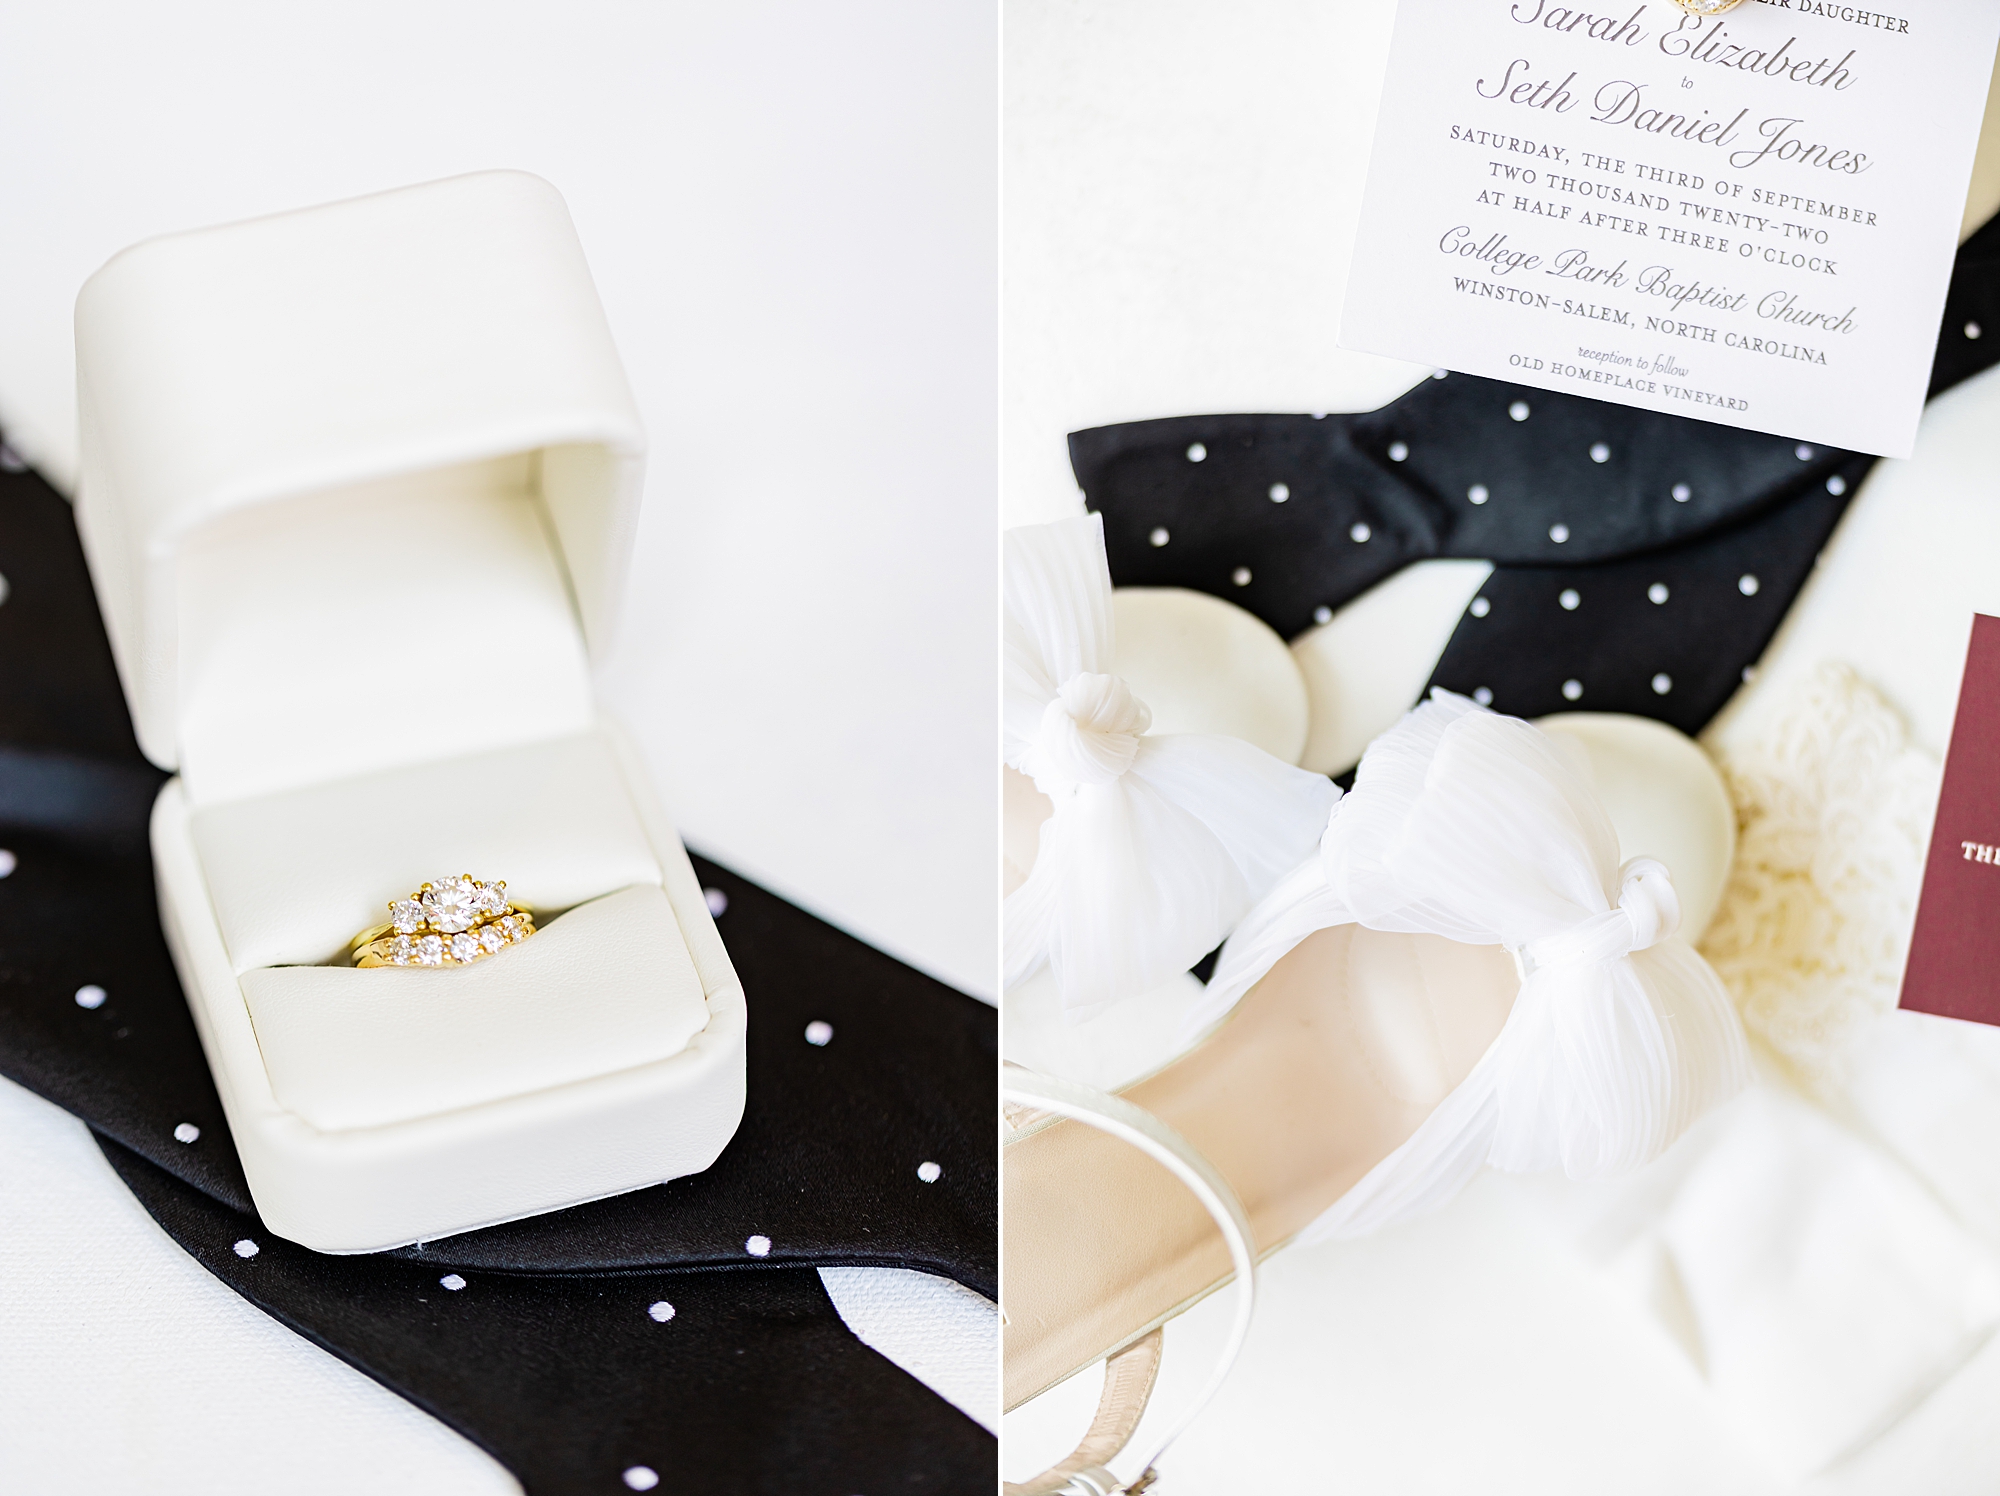 bride's ring sits on groom's tie before wedding